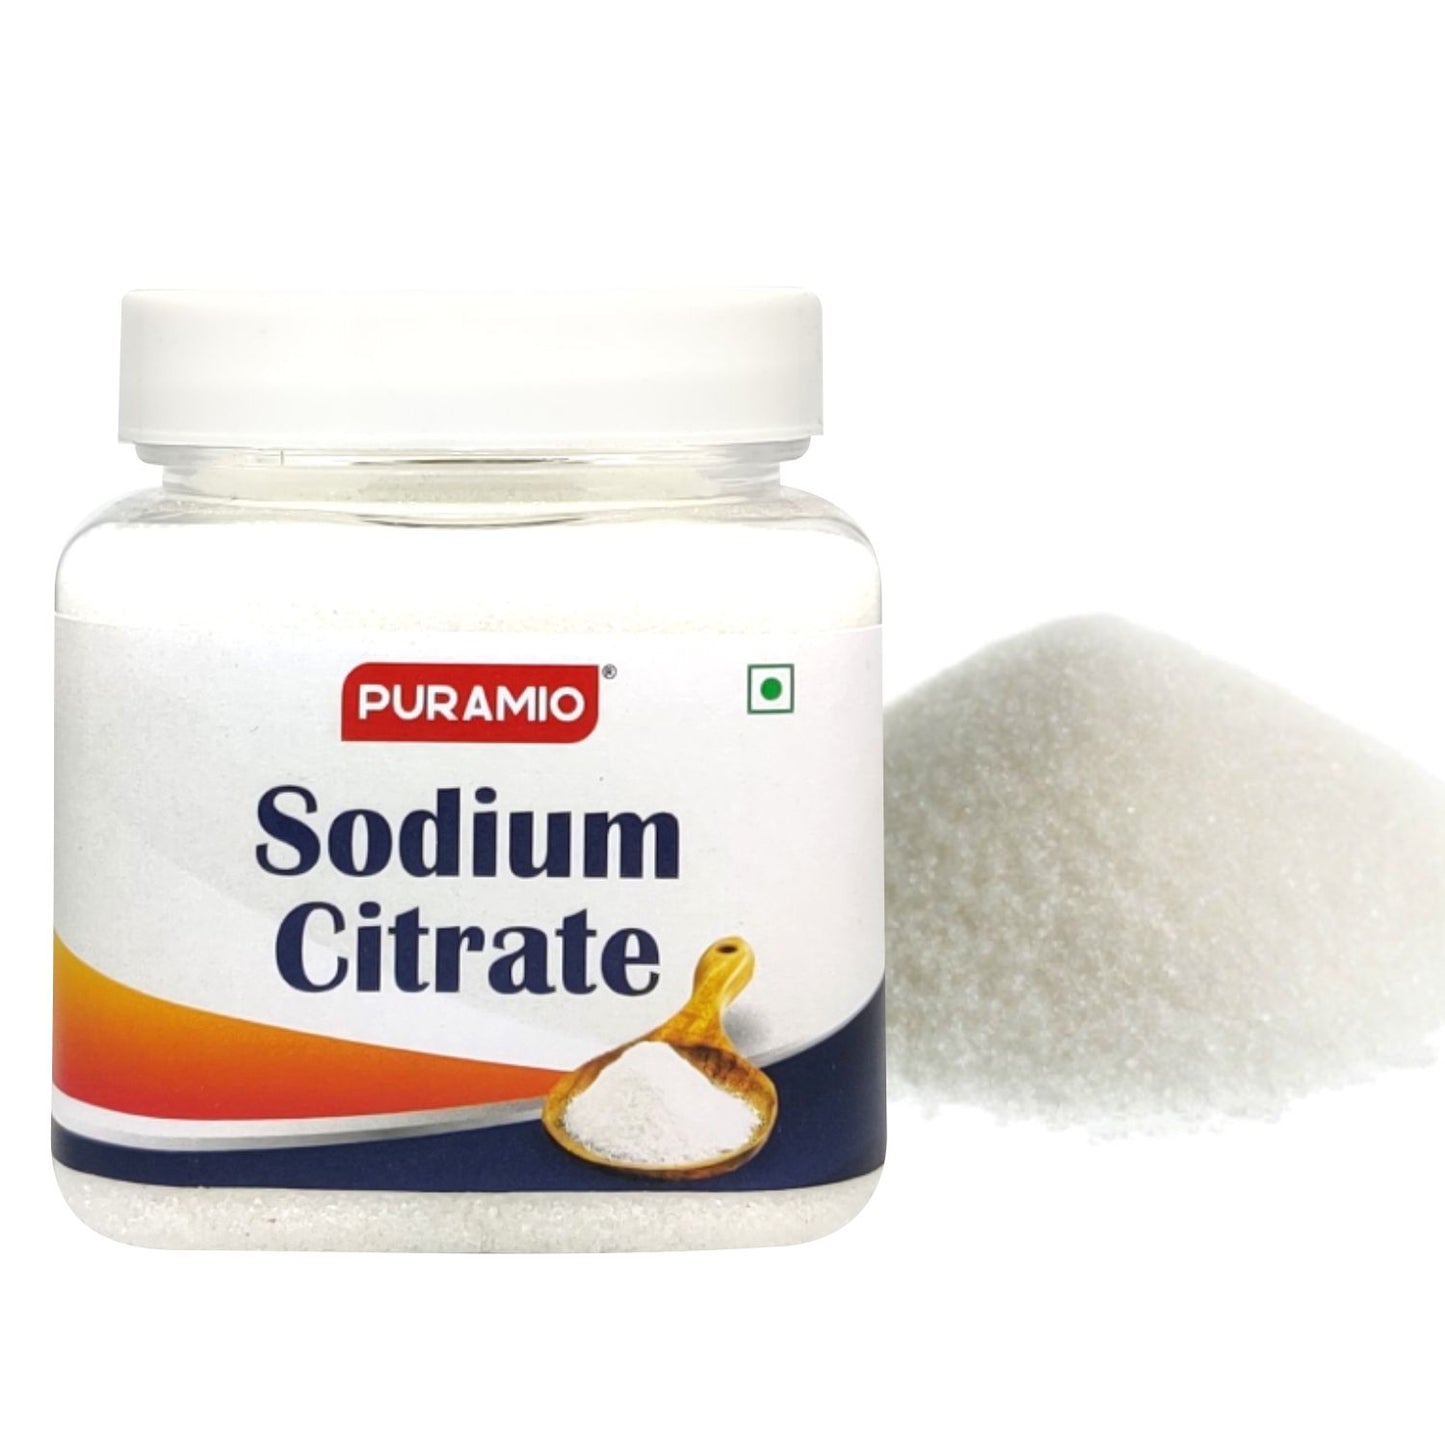 PURAMIO Sodium Citrate